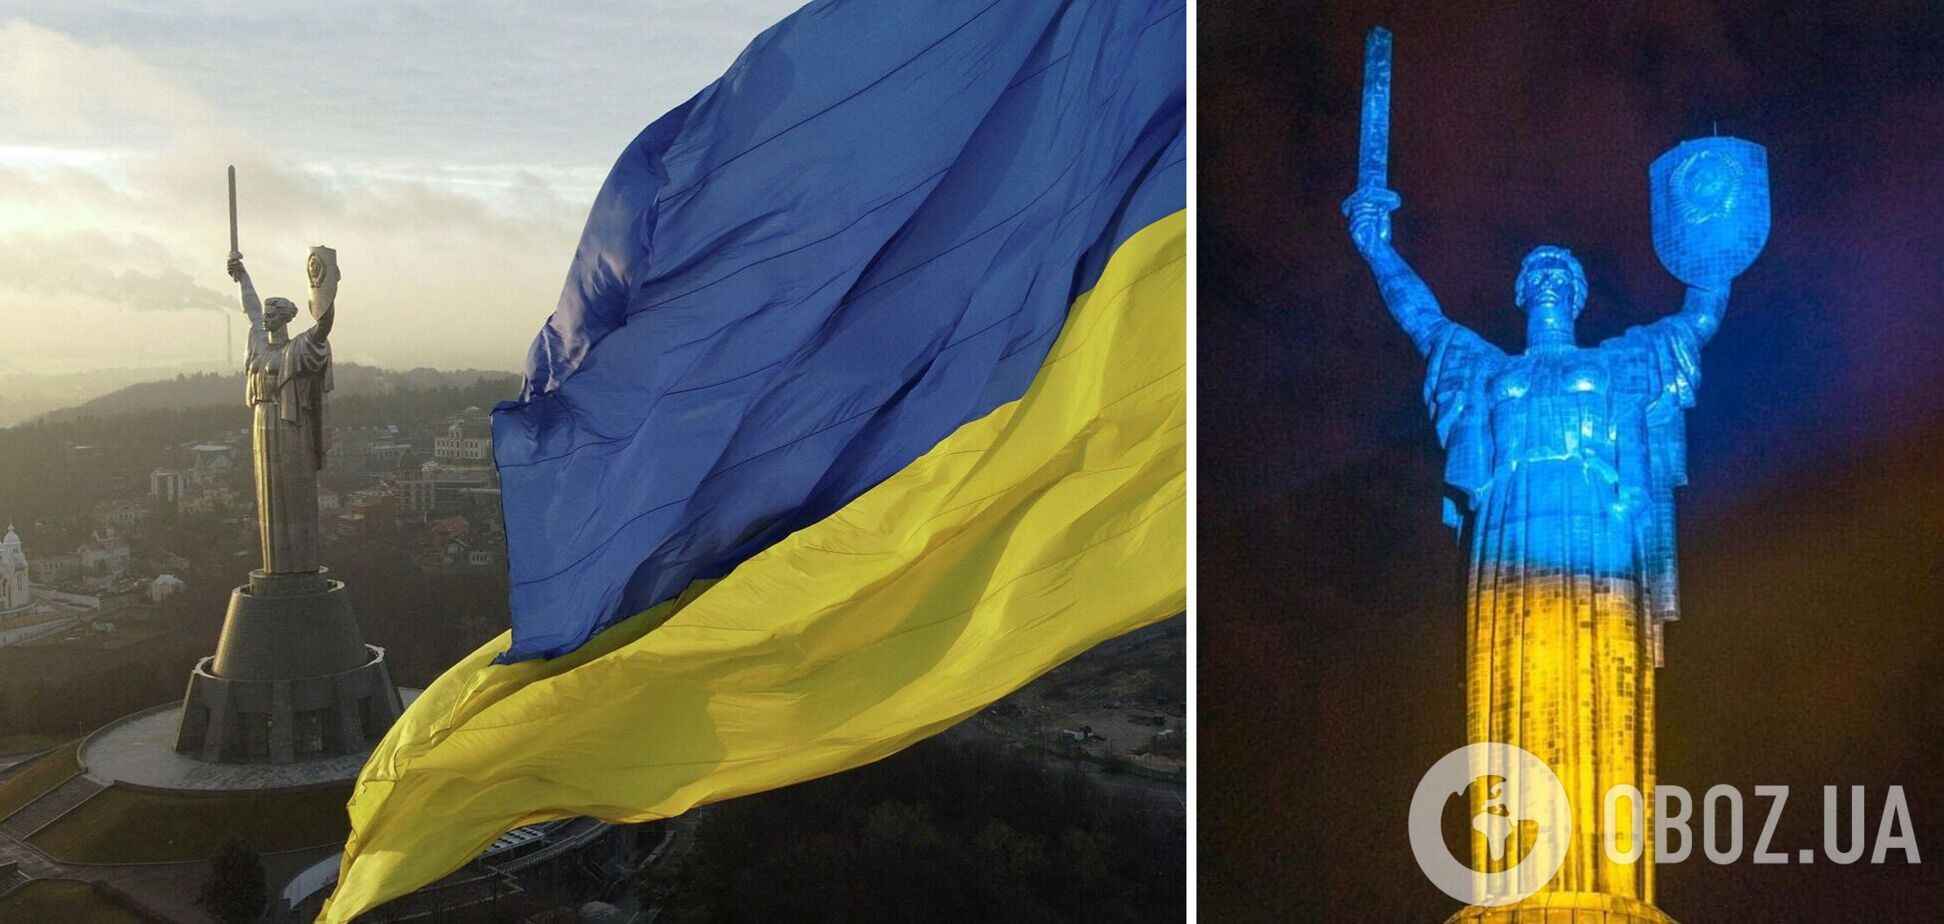 Монумент 'Родина-мать' в Киеве накануне Дня победы над нацизмом подсветили в цвета украинского флага. Фото